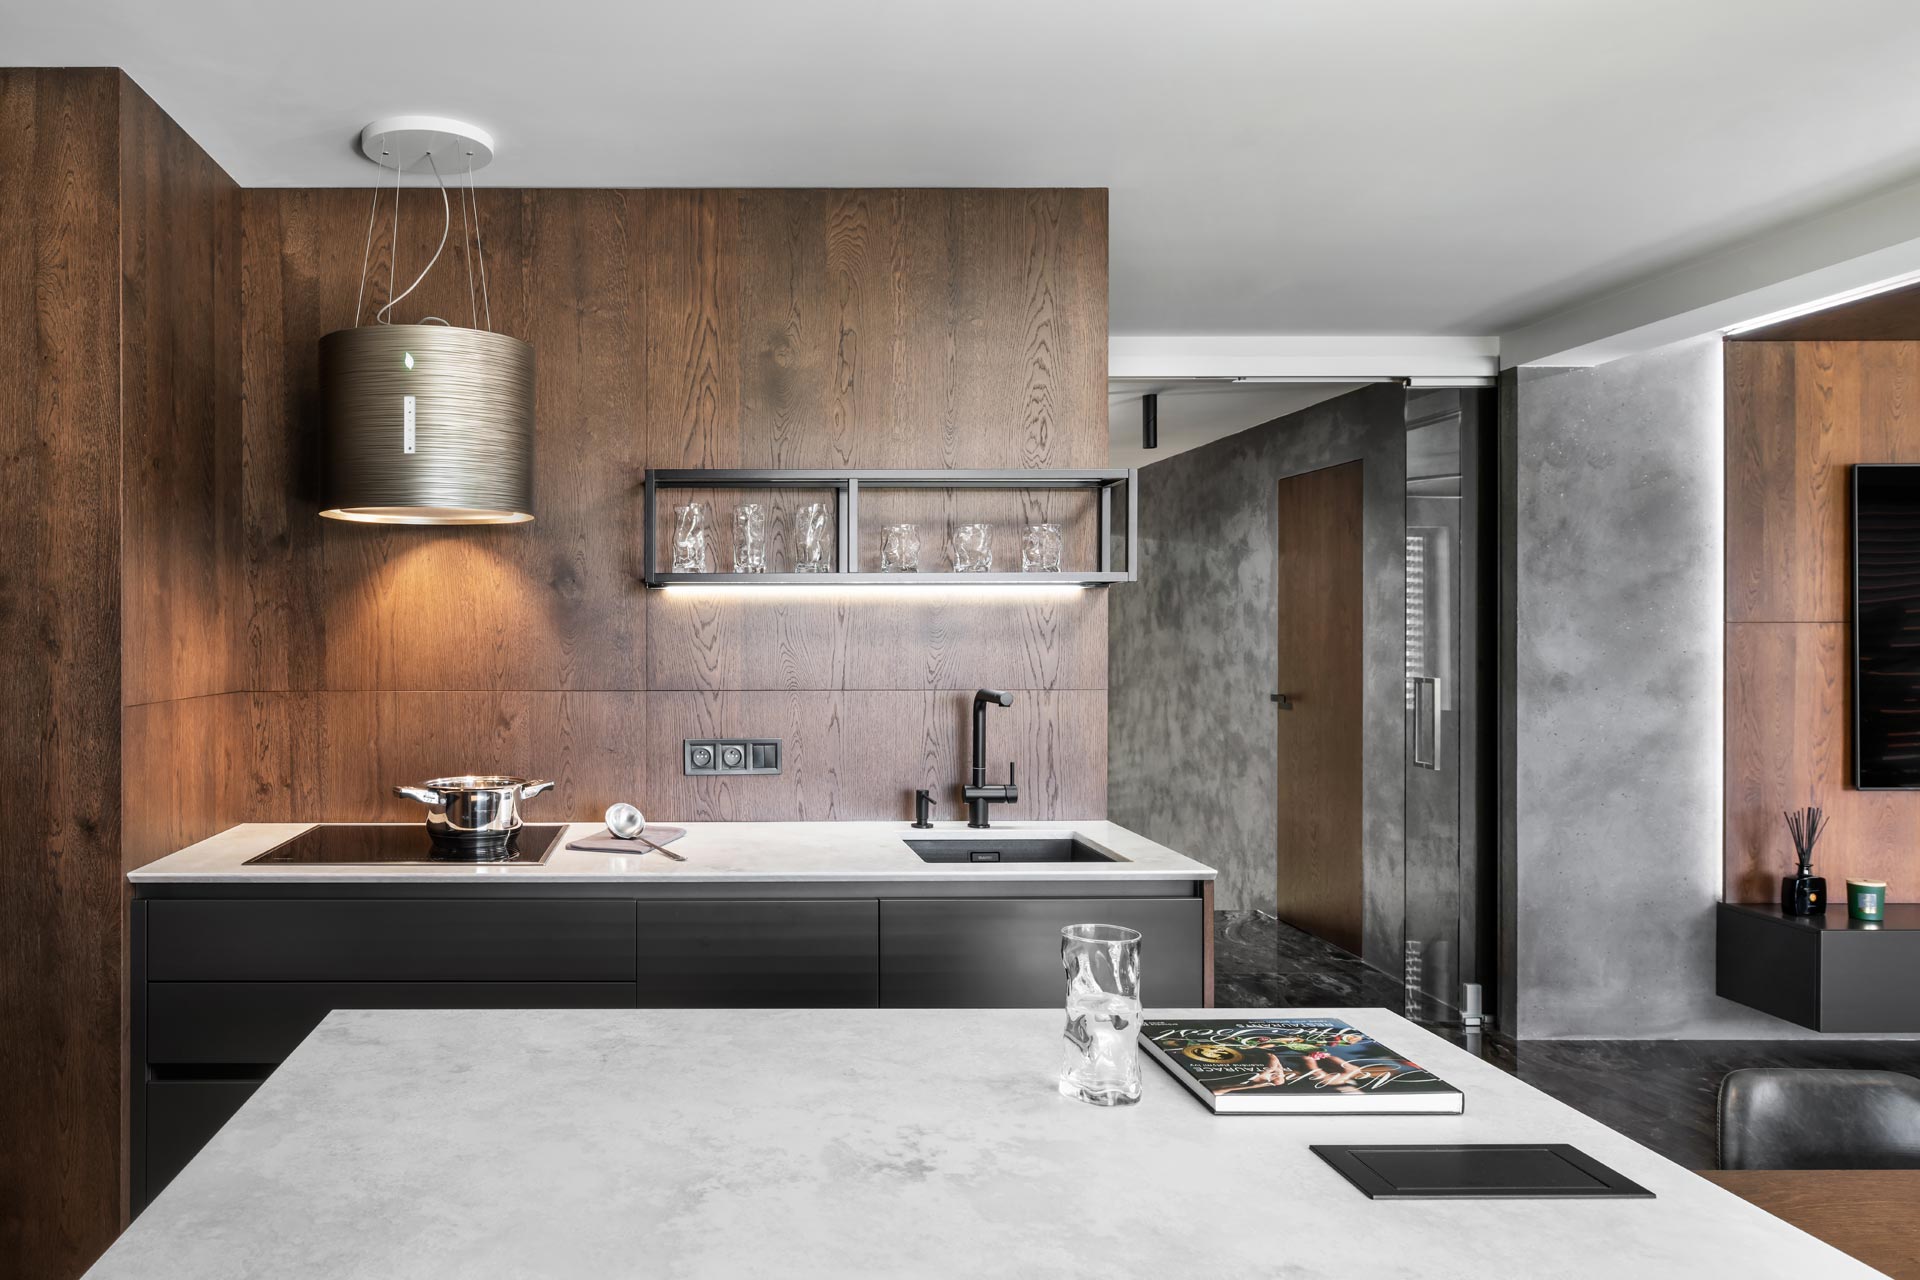 Hanák Möbel Realisierung Einzigartiges Interieur Moderne Küche Rustikales dunkles Furnier